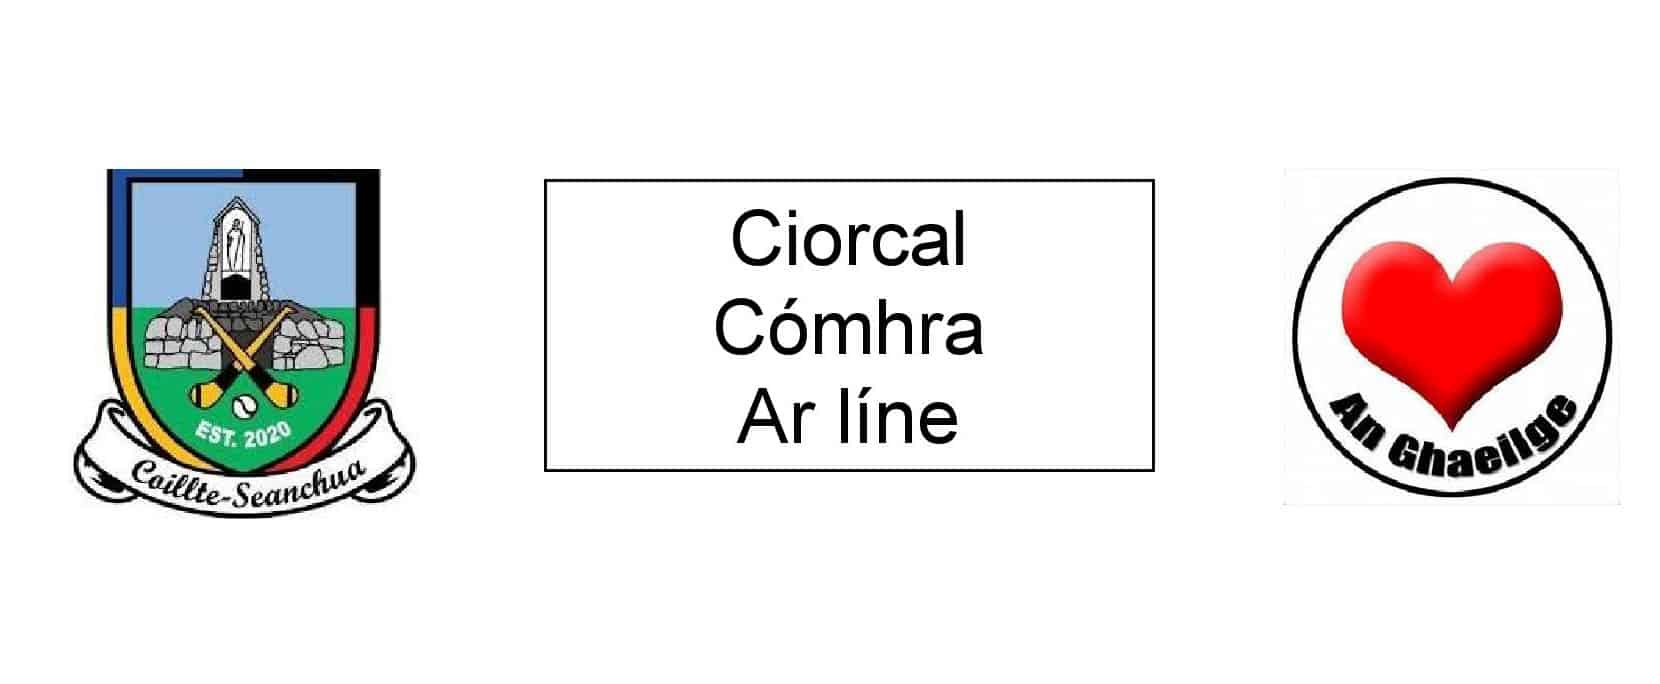 Ciorcal Comhrá – Eanáir C.L.G. Coillte Seanchua